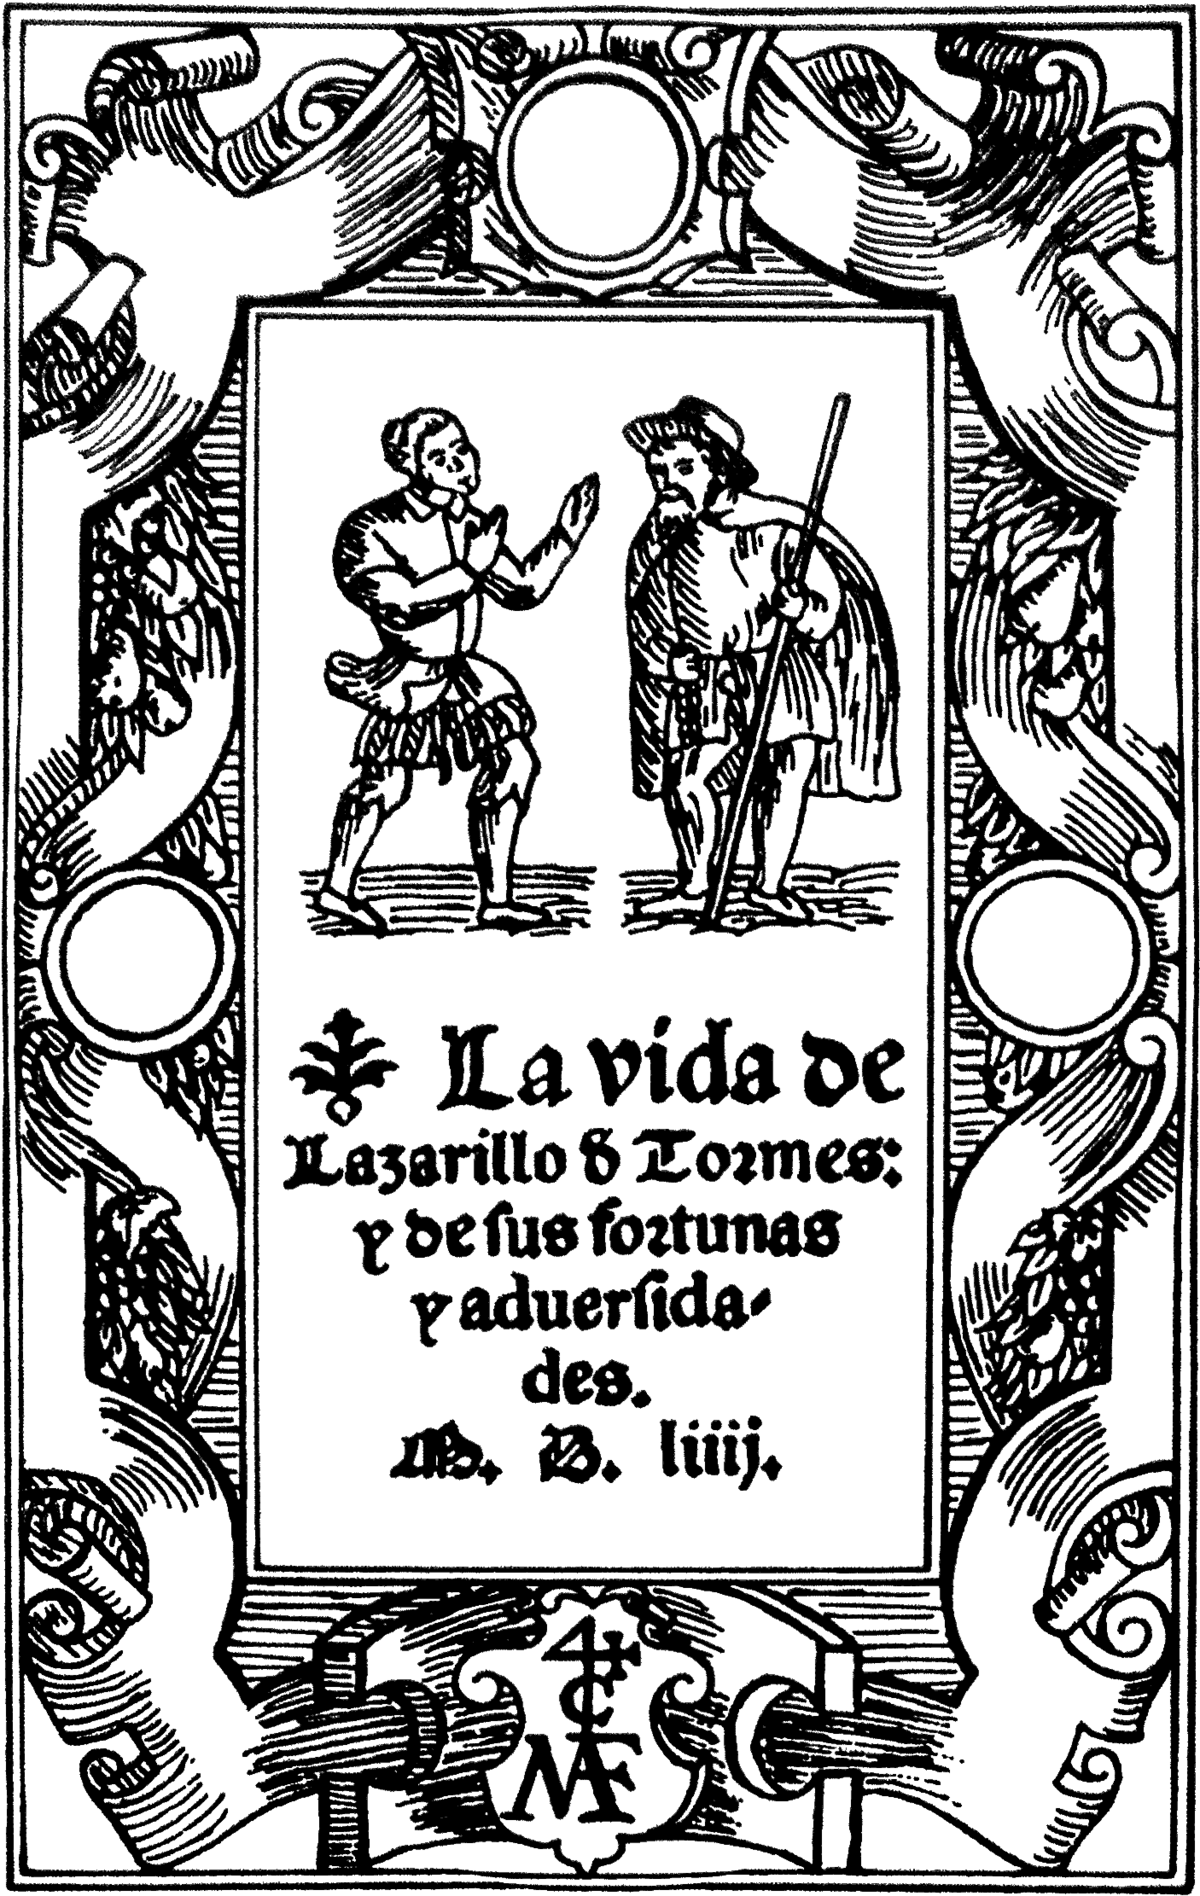 La vida de Lazarillo de Tormes - Wikipedia, la enciclopedia libre